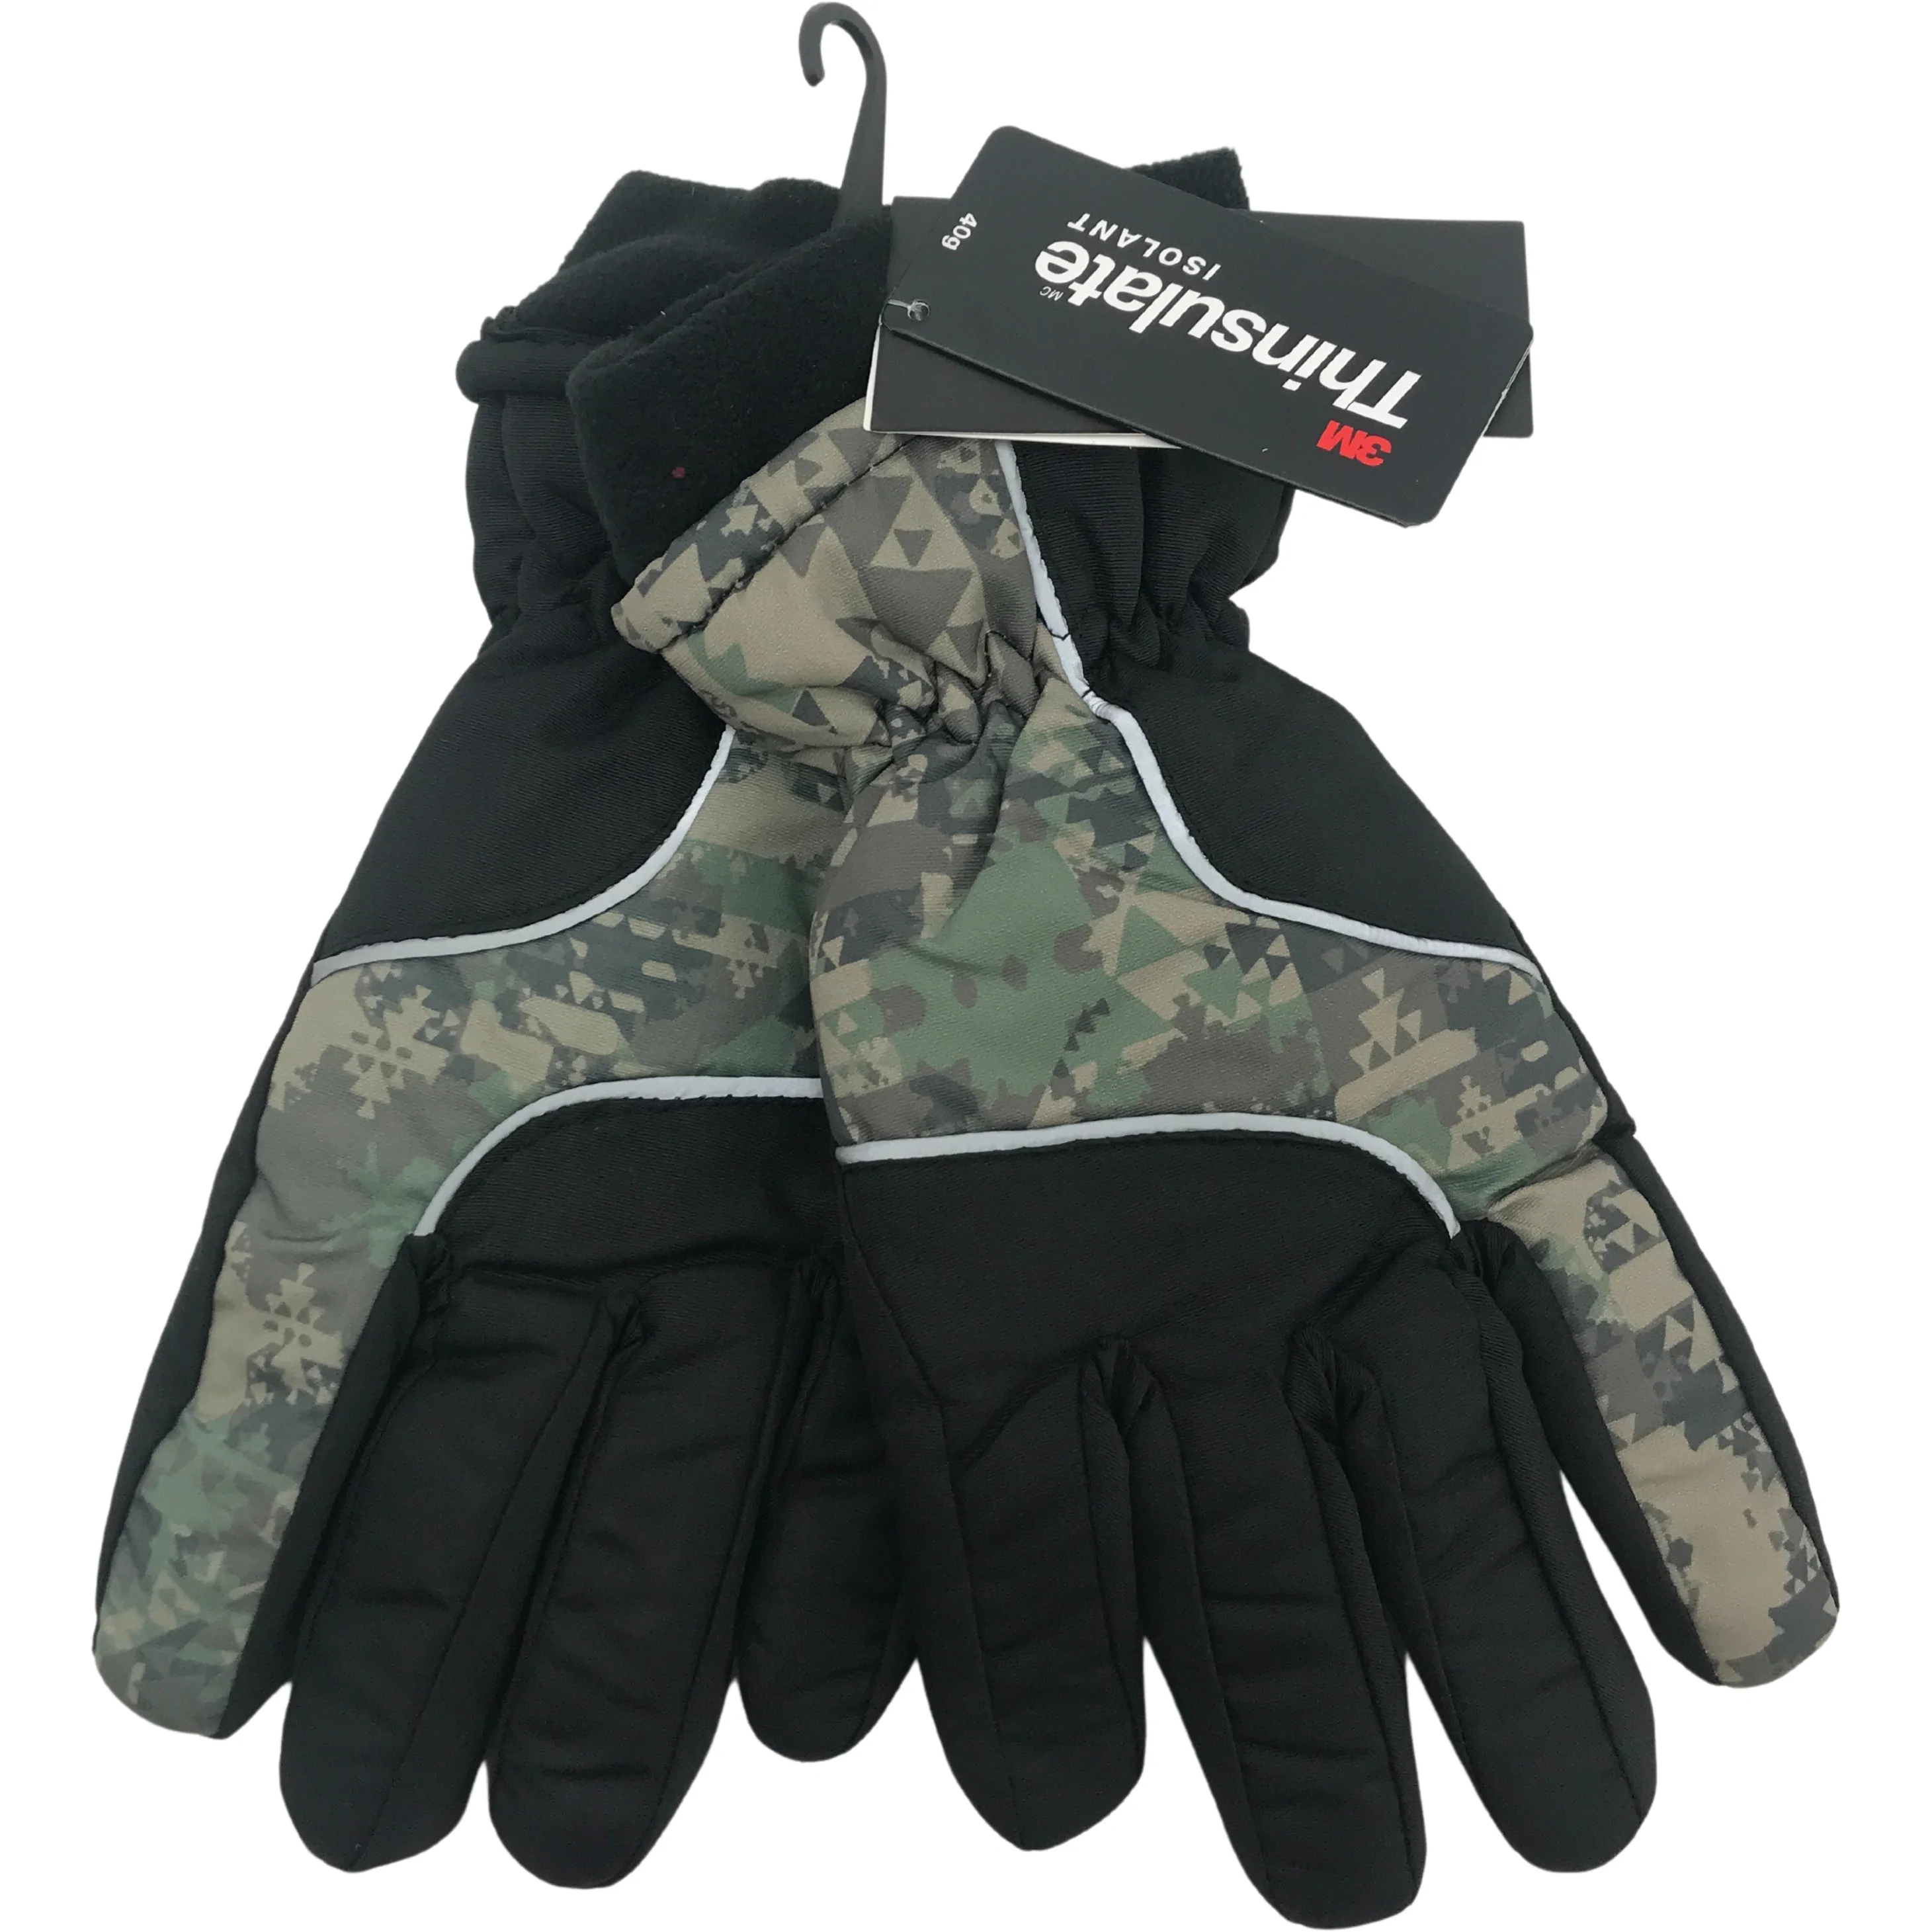 Minus Zero Children's Winter Gloves / Boy's Gloves / Black & Camo / Size 8-20